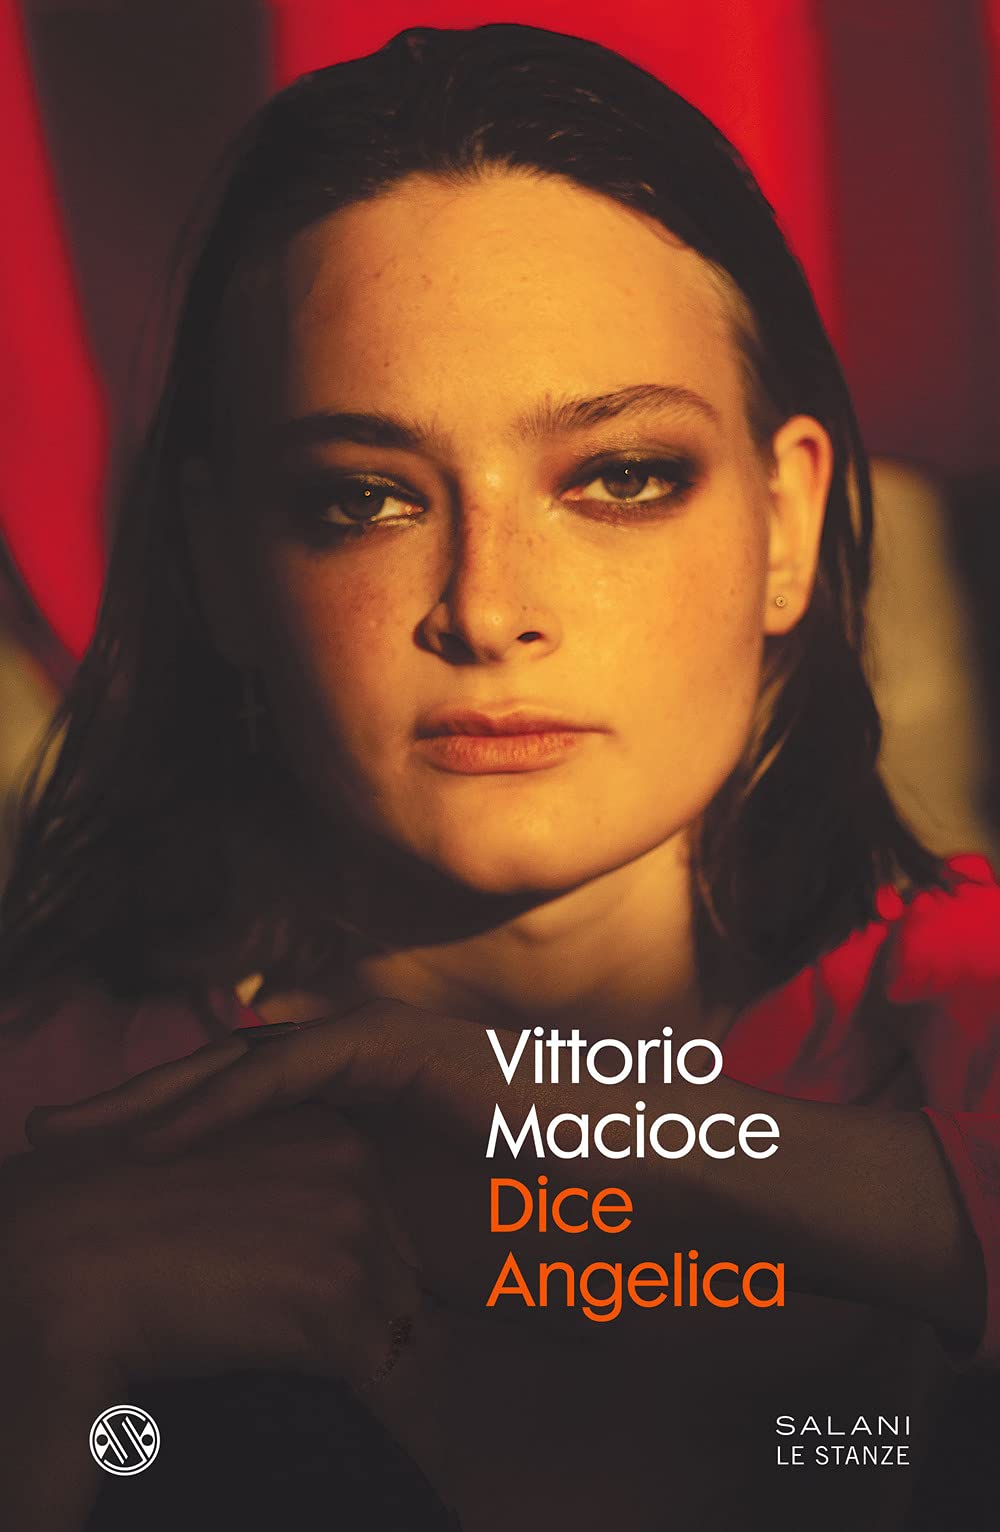 Il libro di Vittorio Macioce: “Dice Angelica”